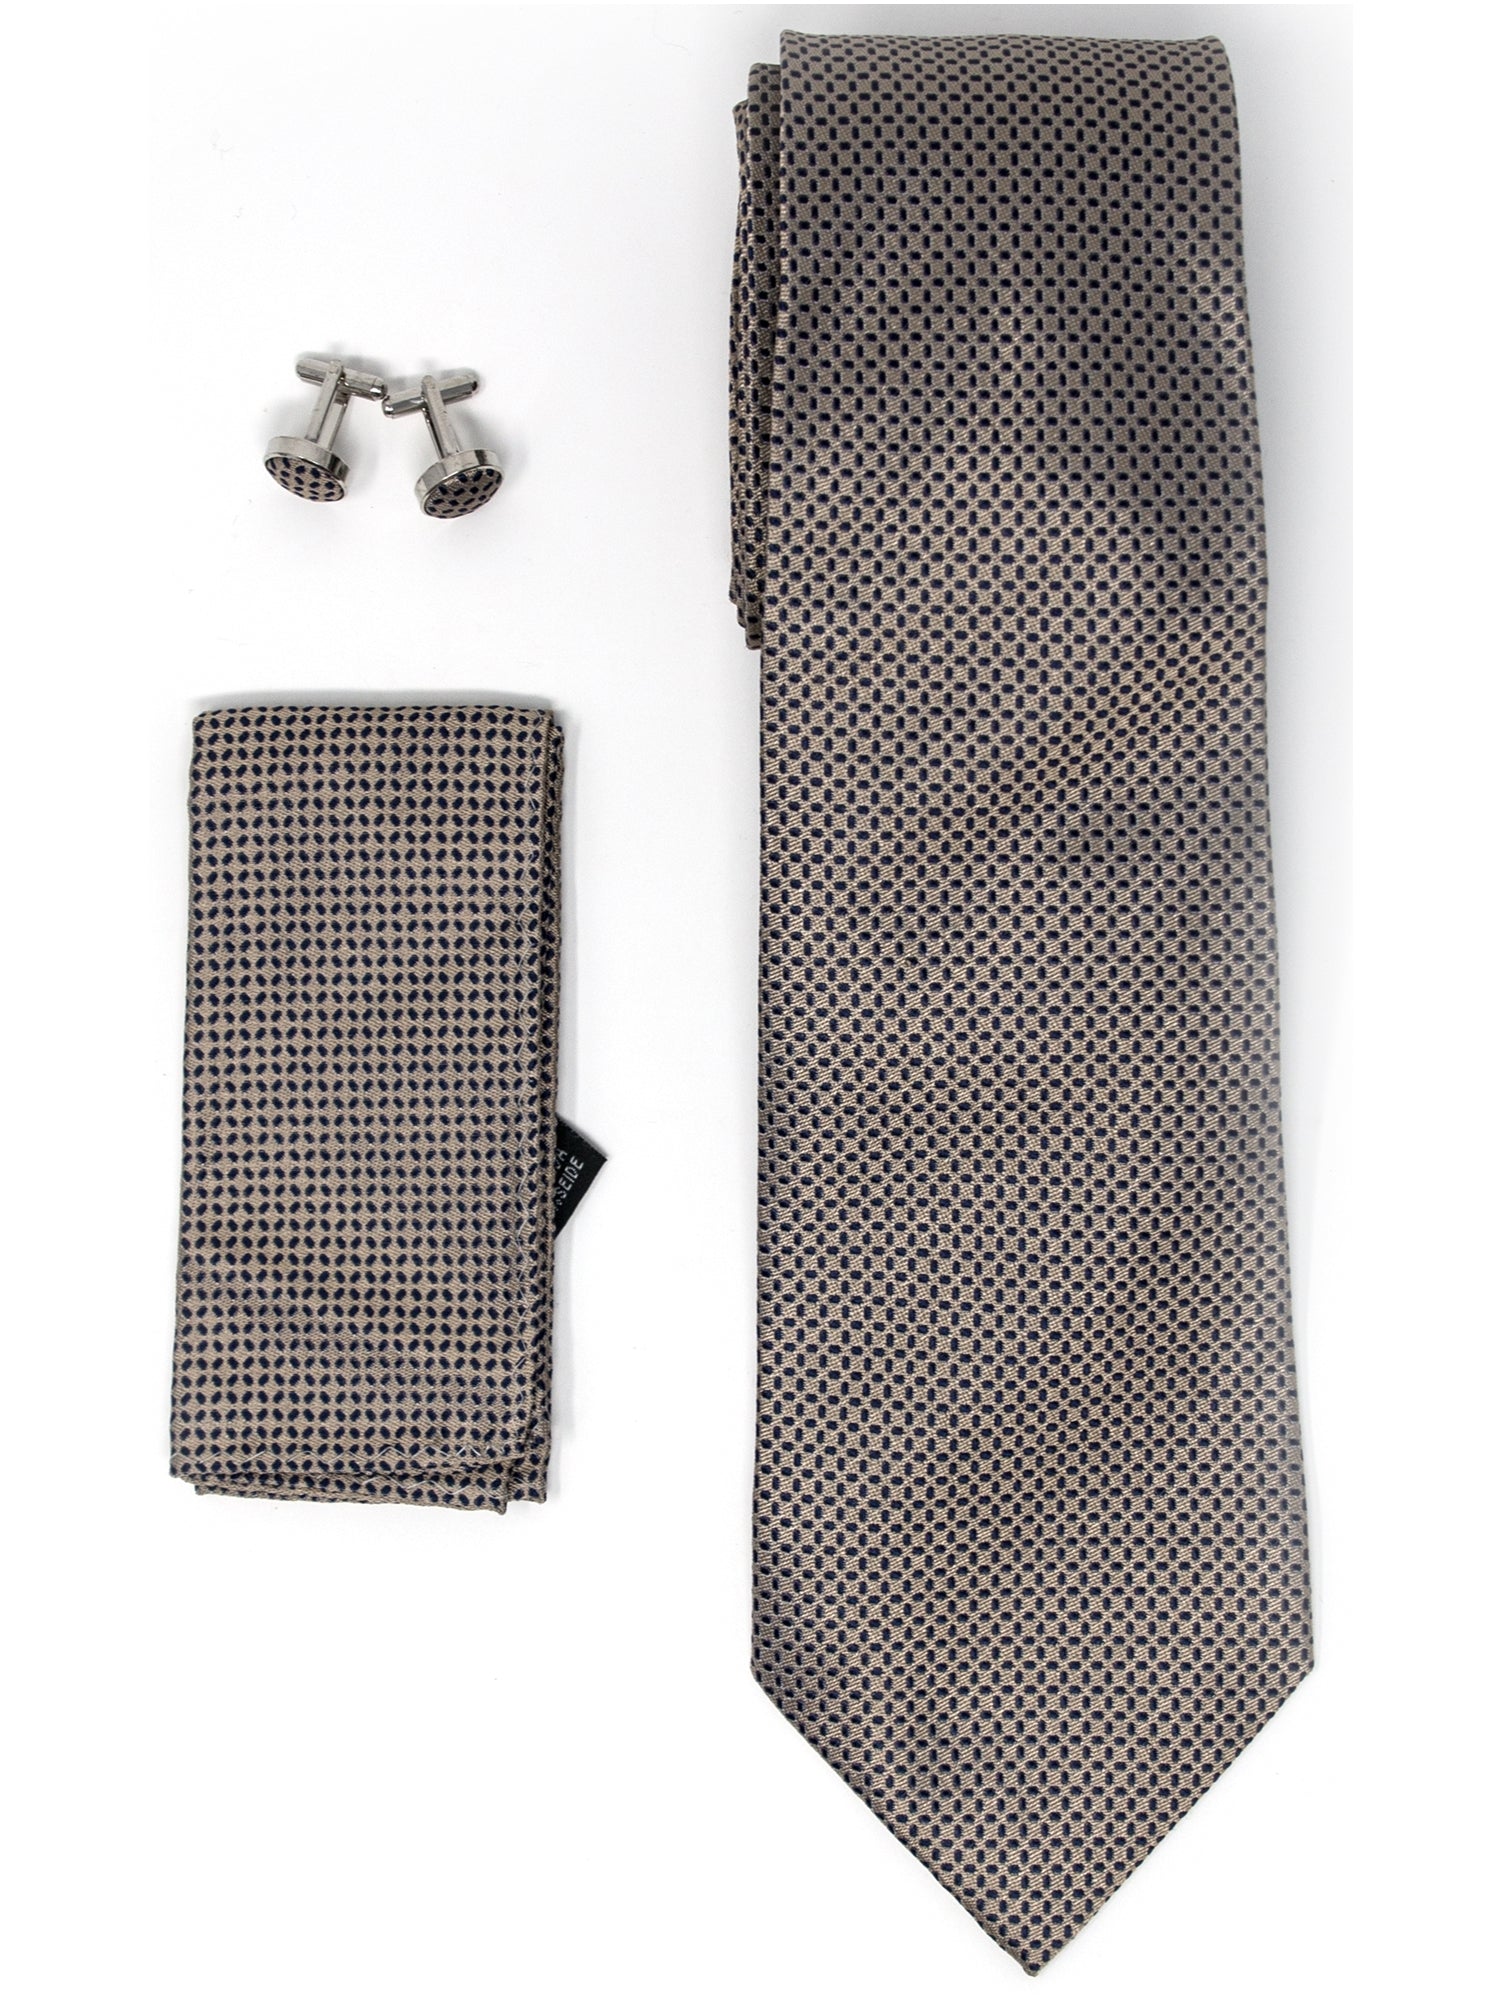 Men's Silk Neck Tie Set Cufflinks & Hanky Collection Neck Tie TheDapperTie Light Brown Geometric Regular 